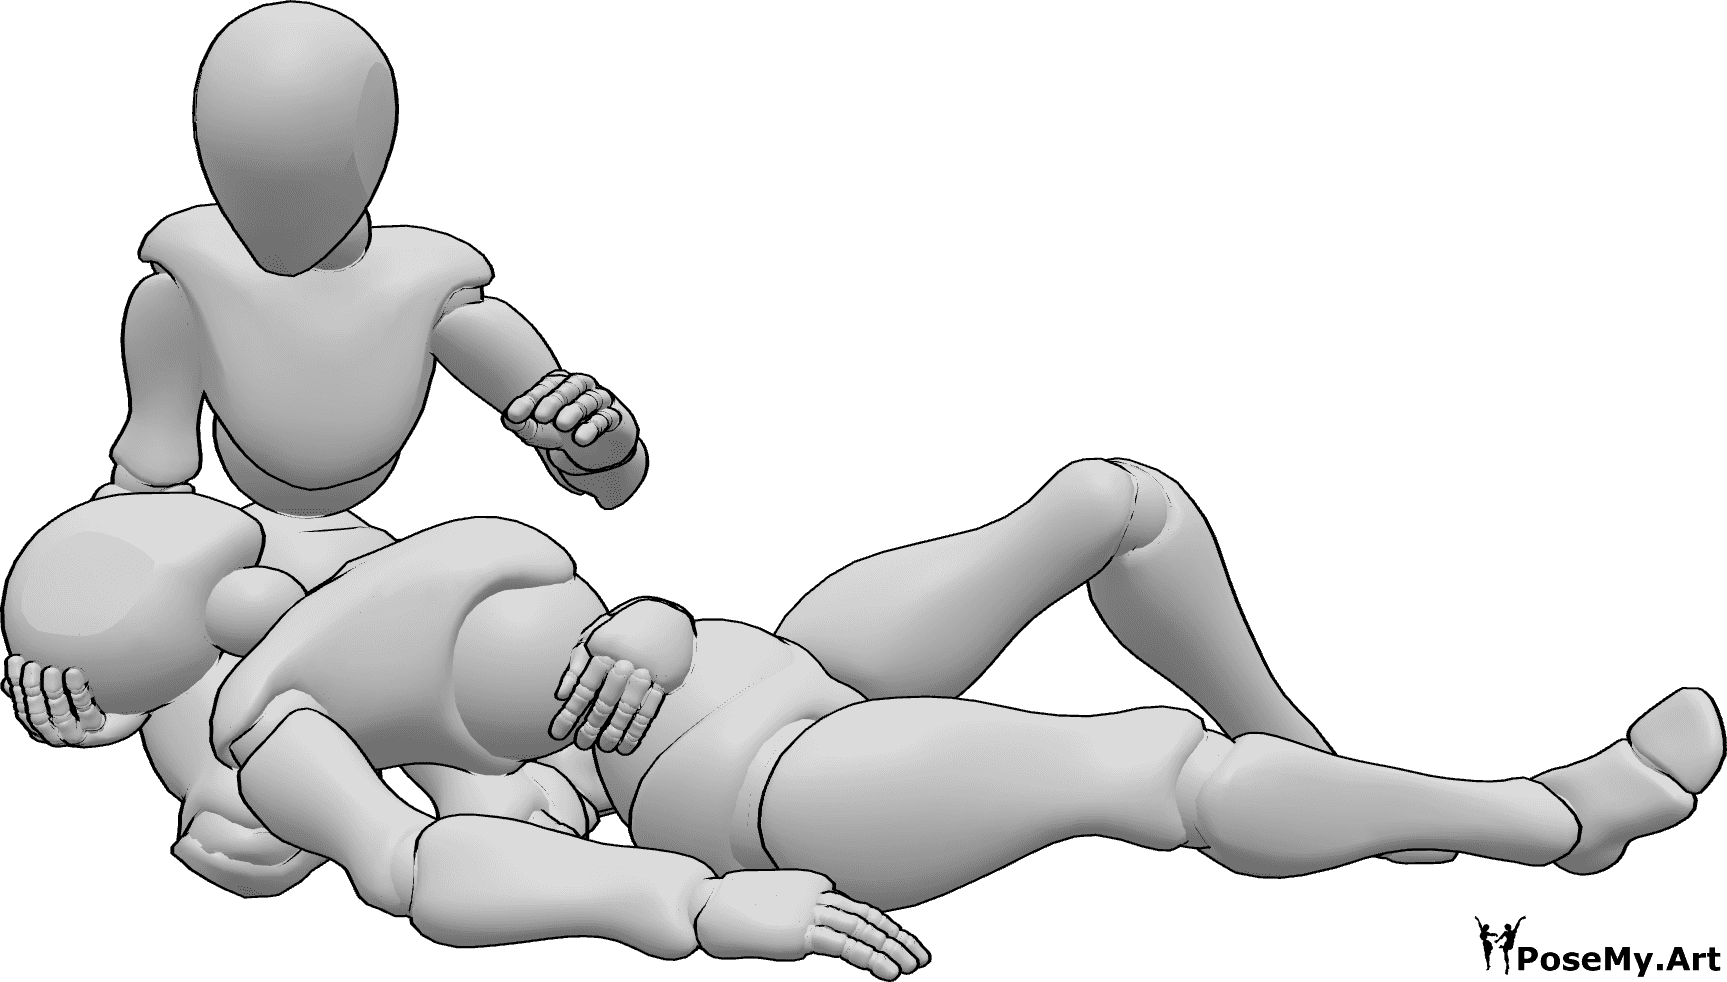 Posen-Referenz- Verletzte Frau in liegender Pose - Das verletzte Weibchen liegt auf dem Schoß des anderen Weibchens und hält sich den Bauch.